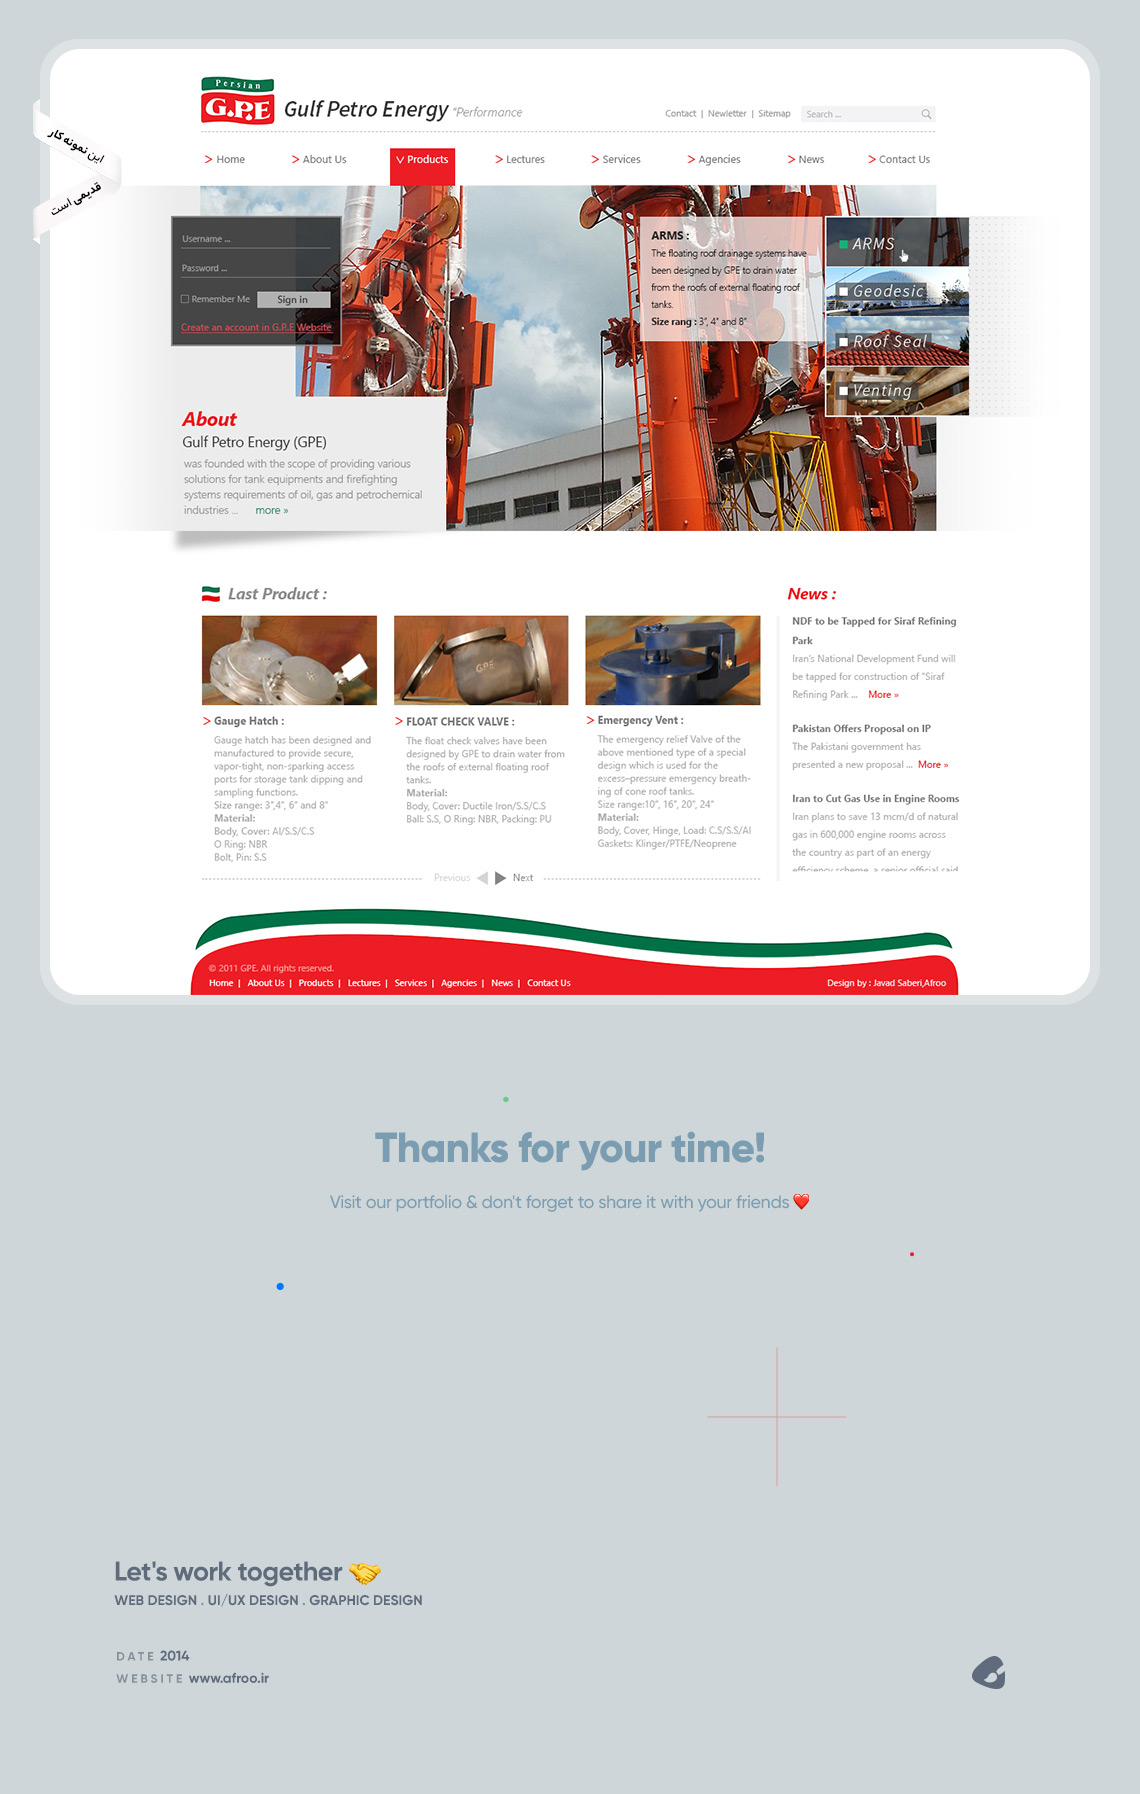 طراحی گرافیک وب، طراحی رابط کاربری وب سایت پترو انرژی خلیج فارس، تنها طراح و تولید کننده ایرانی تجهیزات نفت،گاز،پتروشیمی و نیروگاهی در زمینه تجهیزات مخازن نفتی 